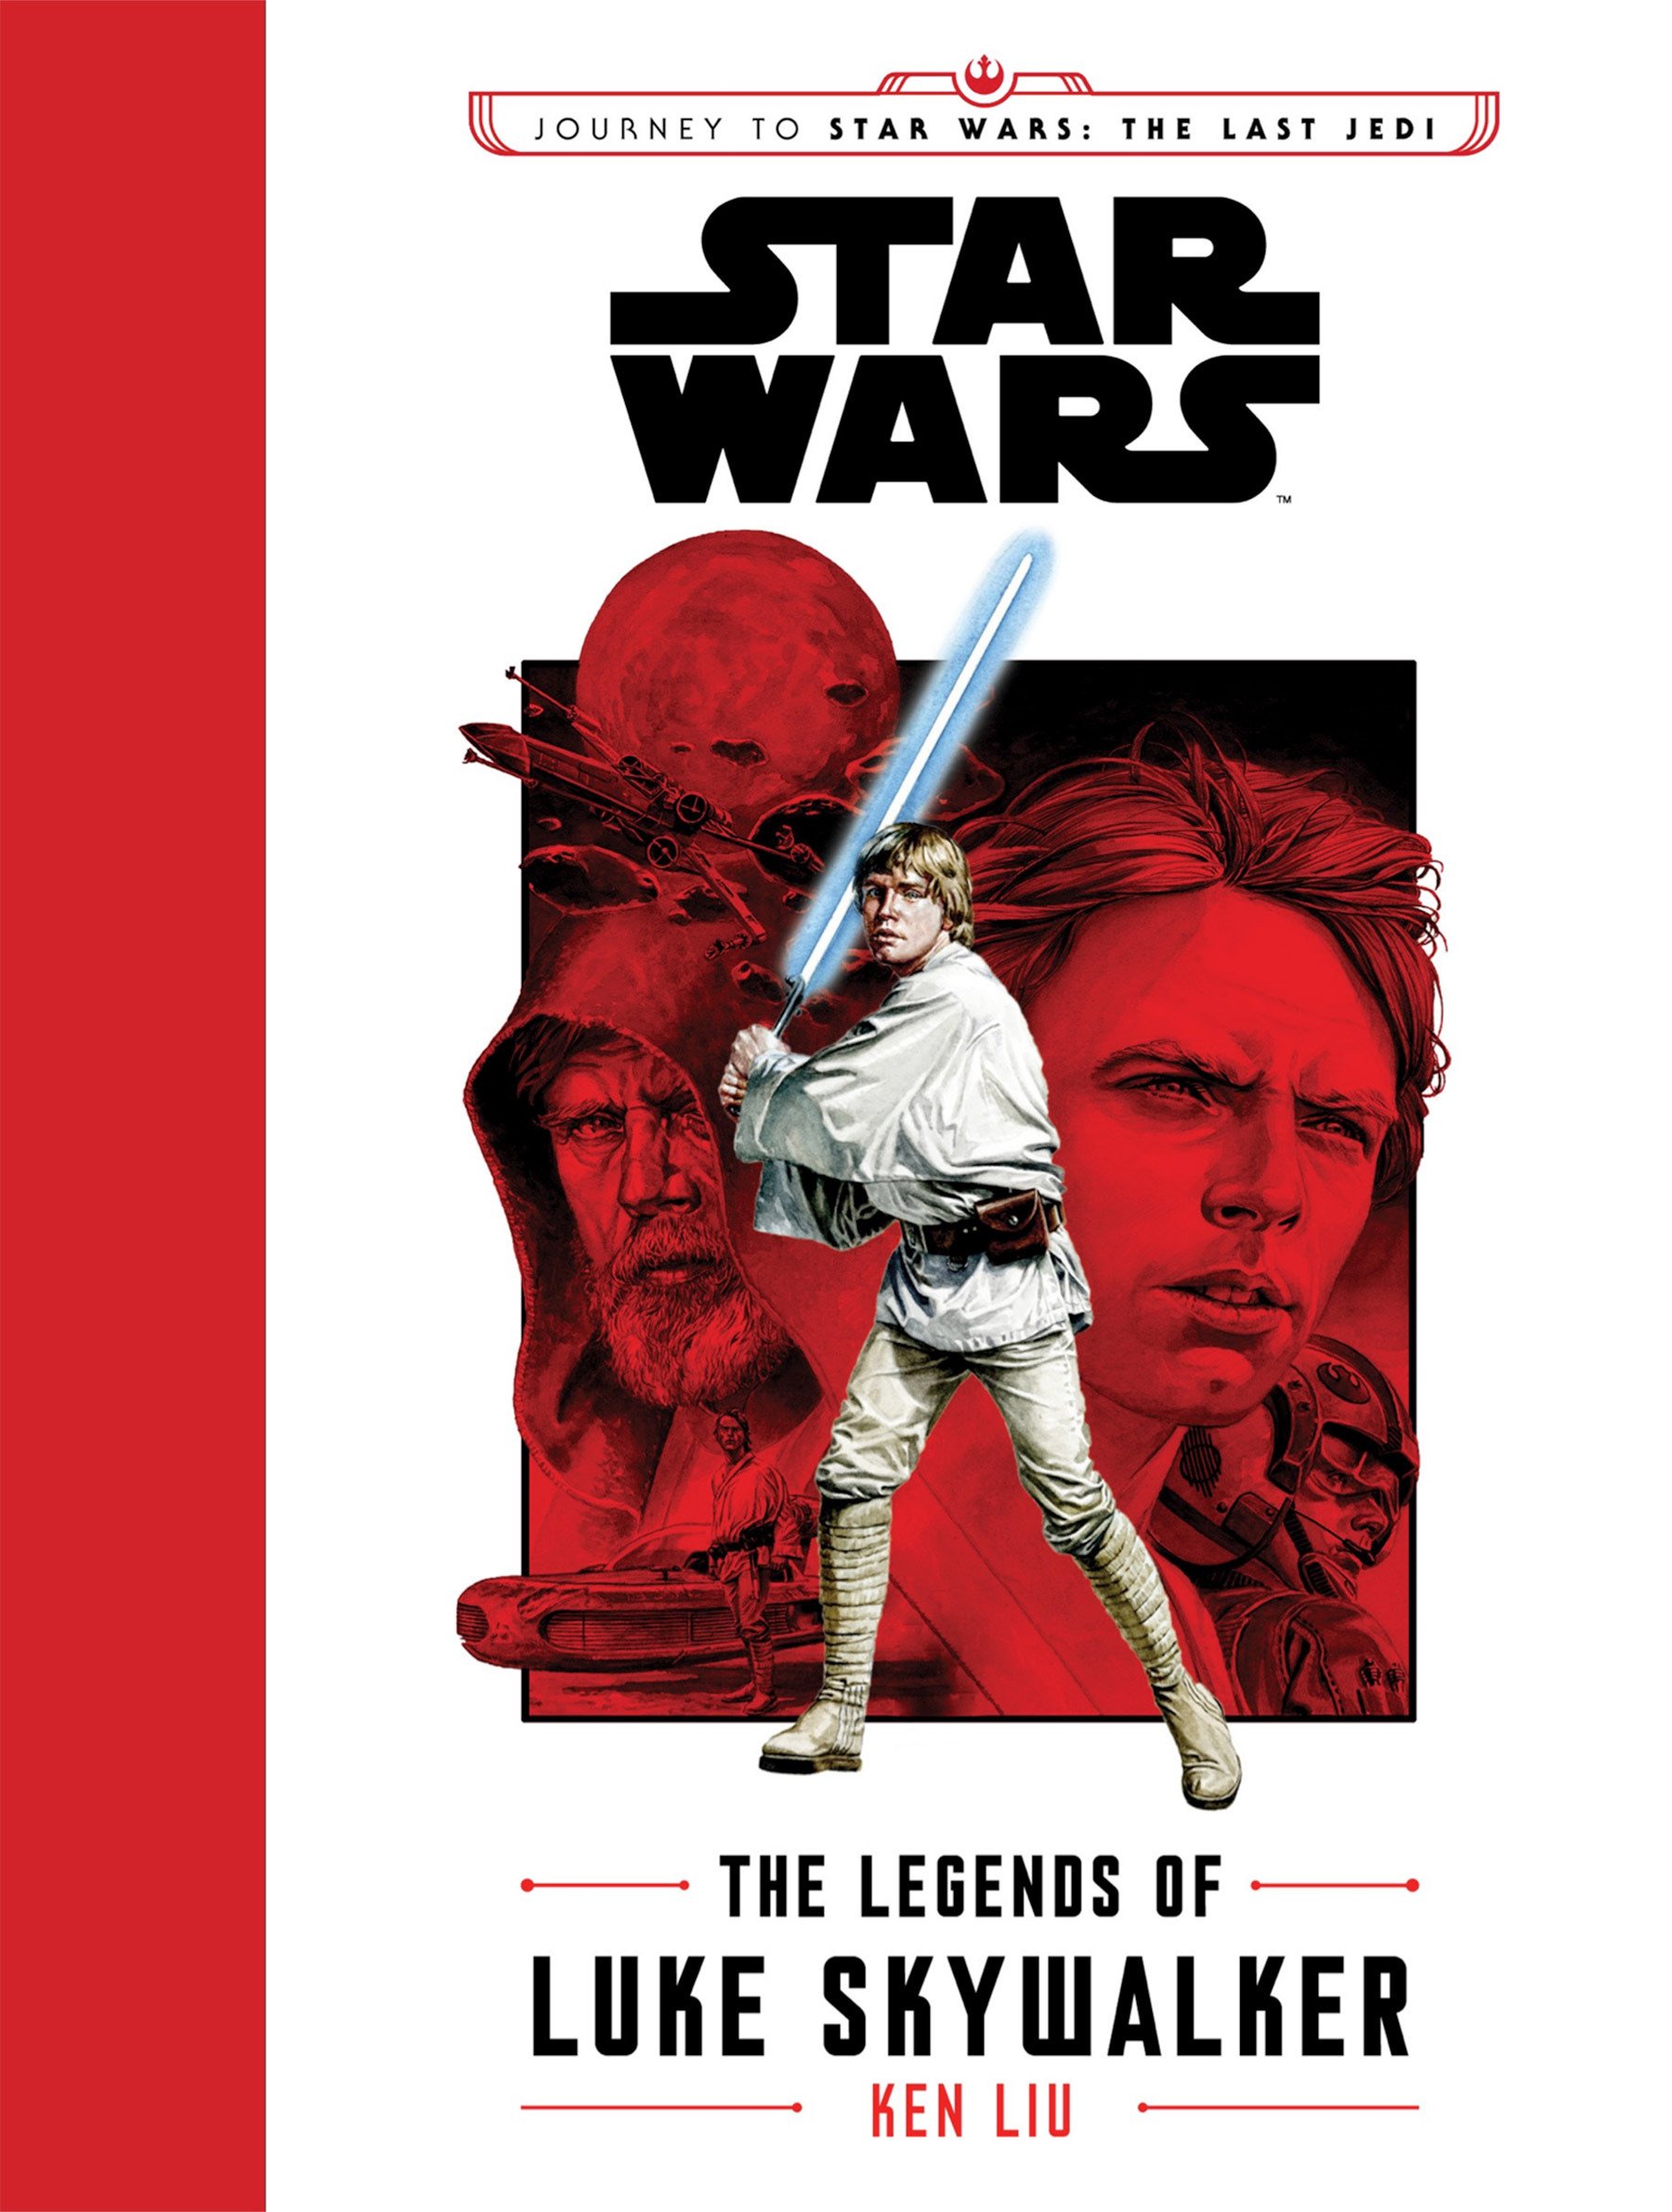 legends of Luke skywalker cover